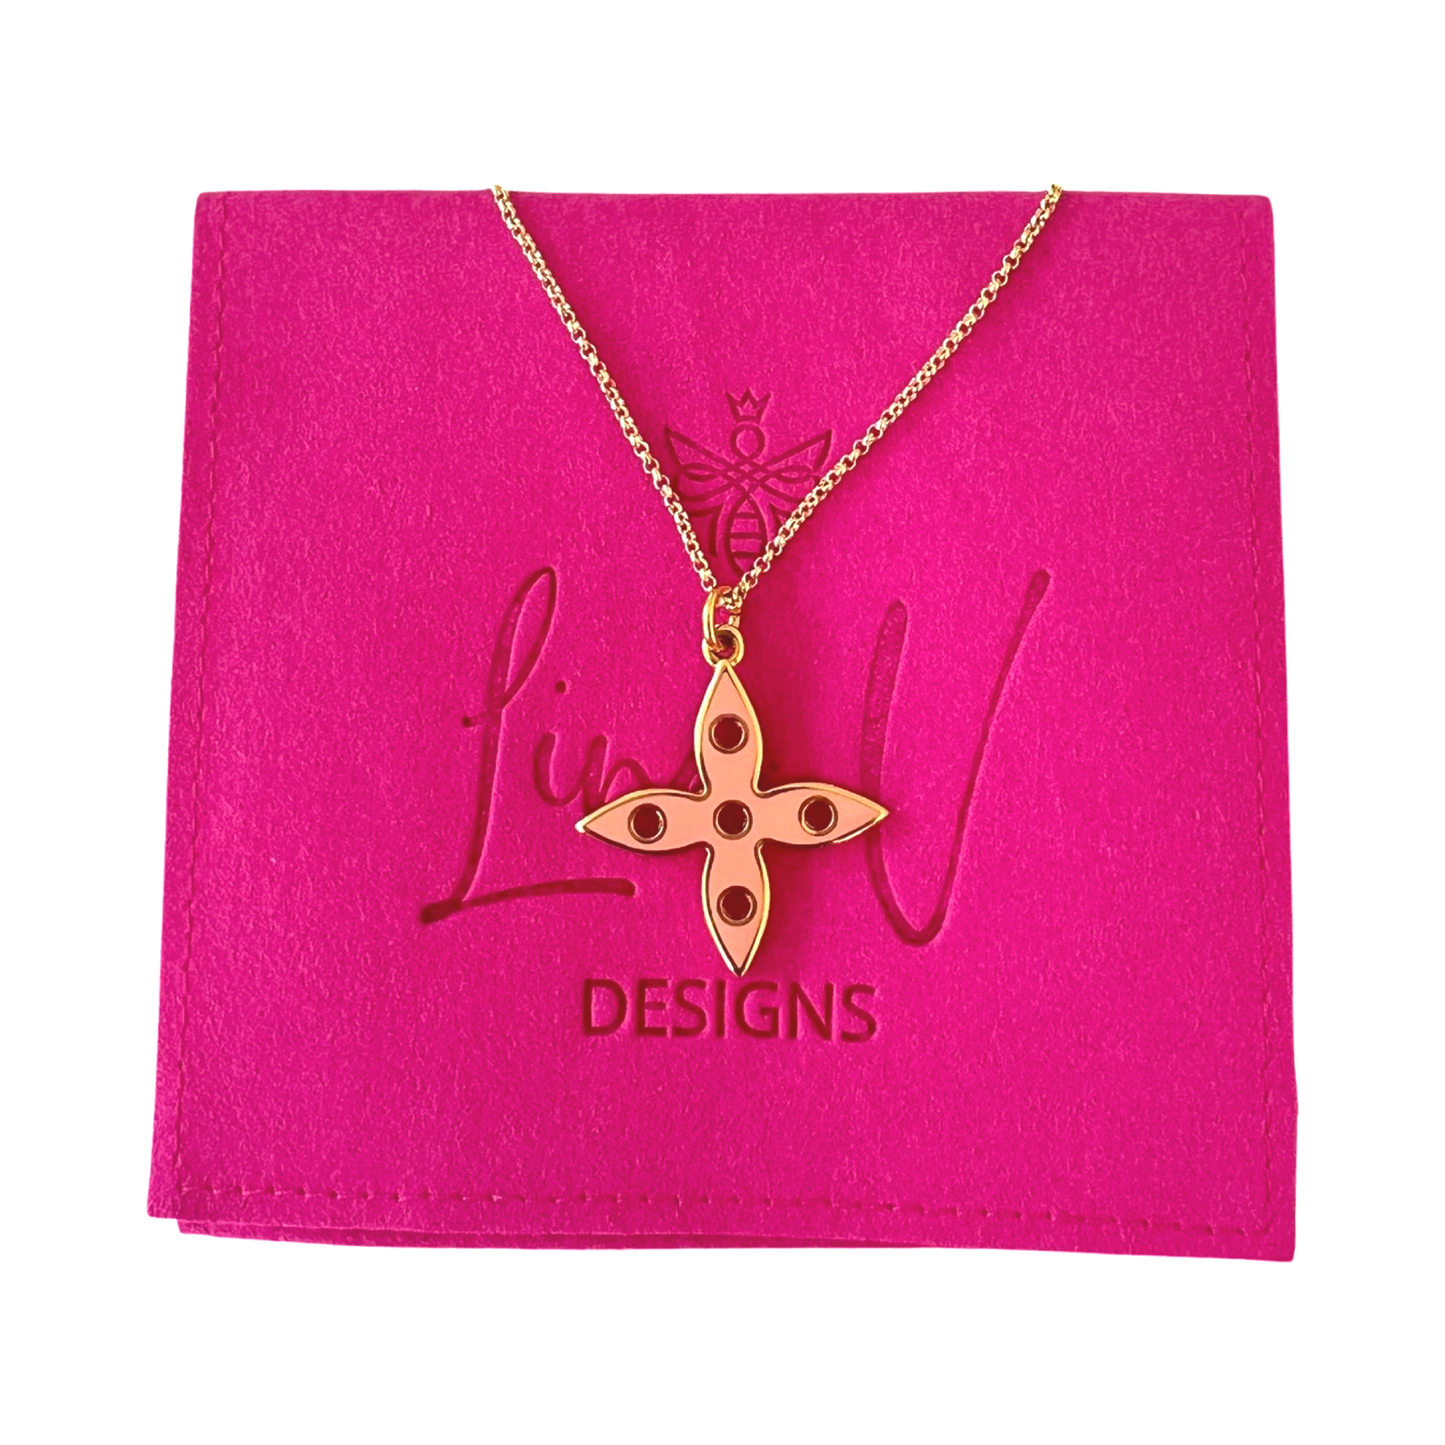 Louis Vuitton Large Pendant Necklace